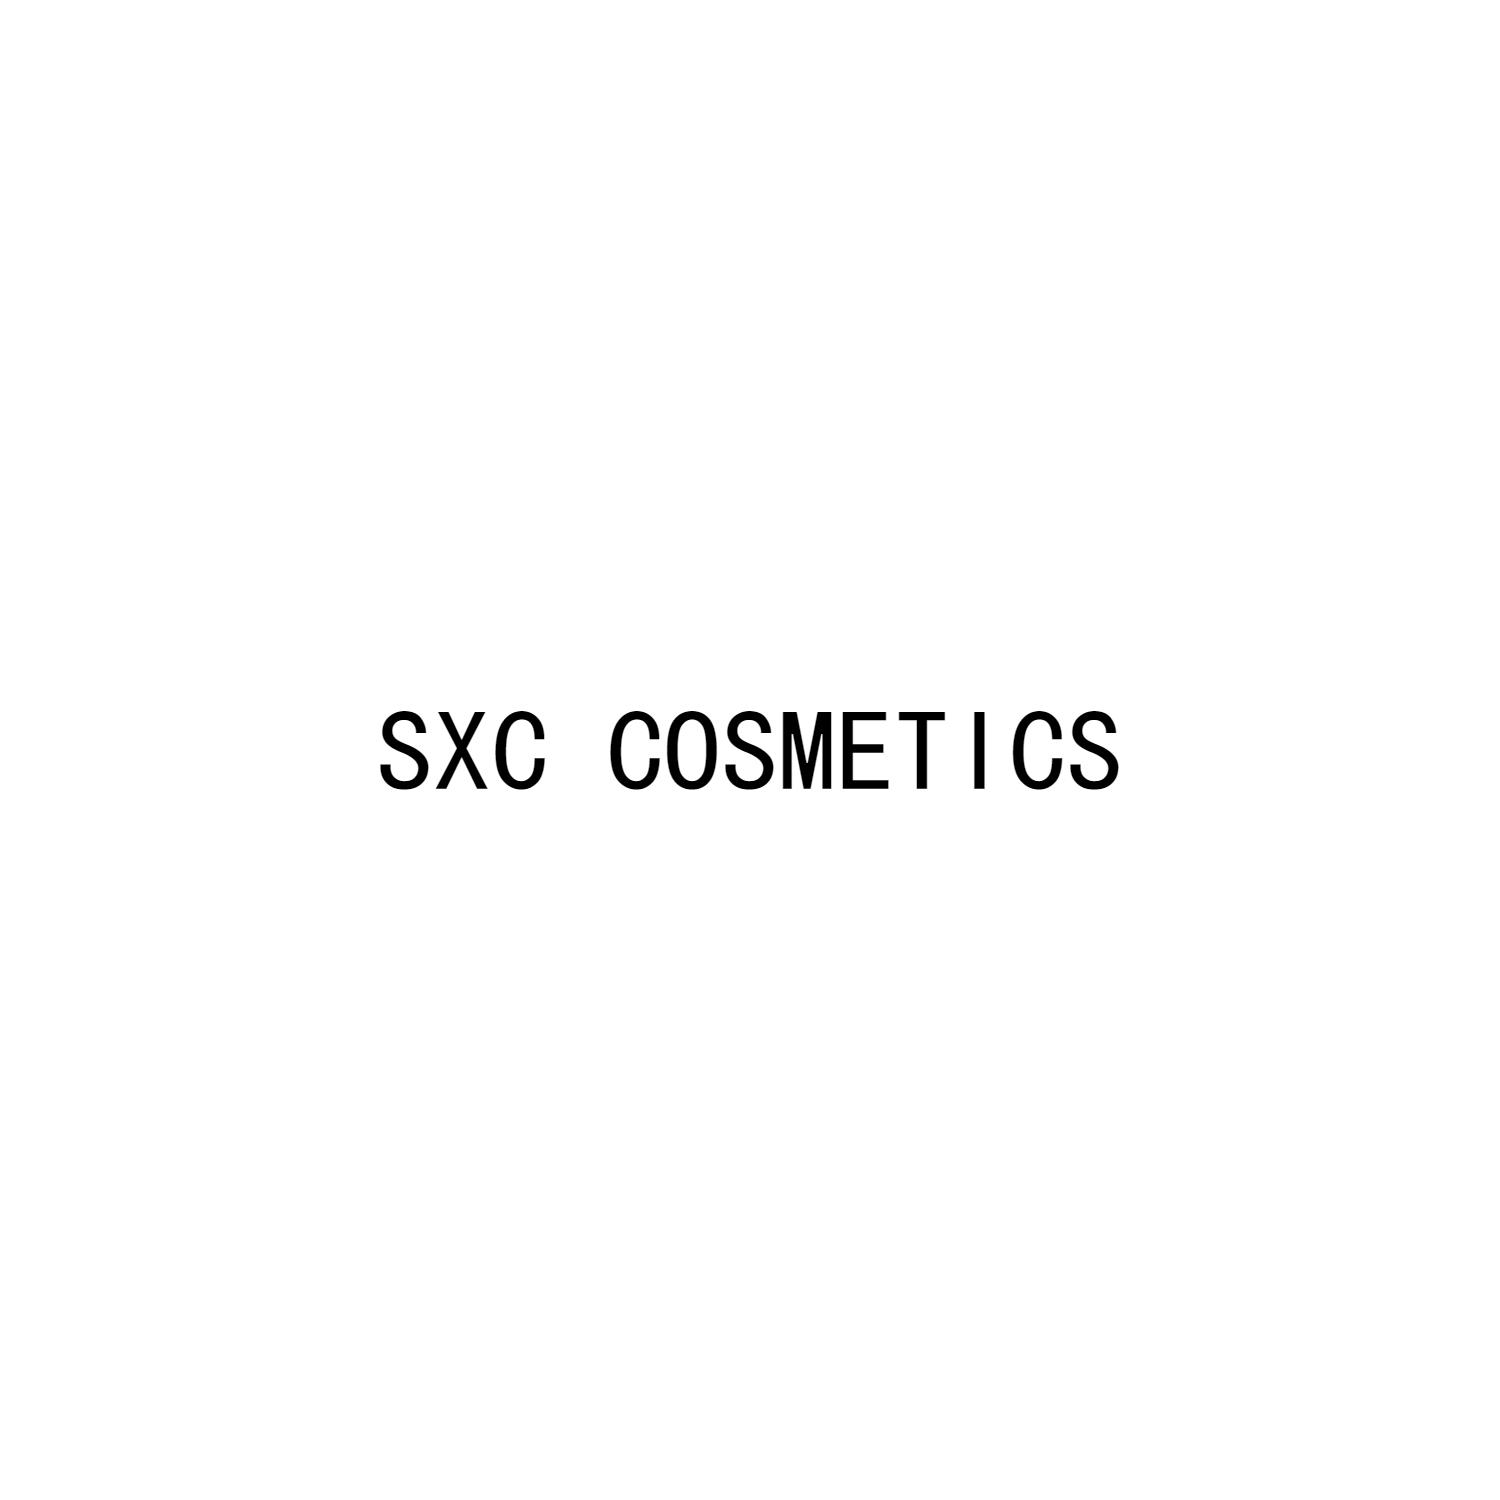 SXC COSMETICS